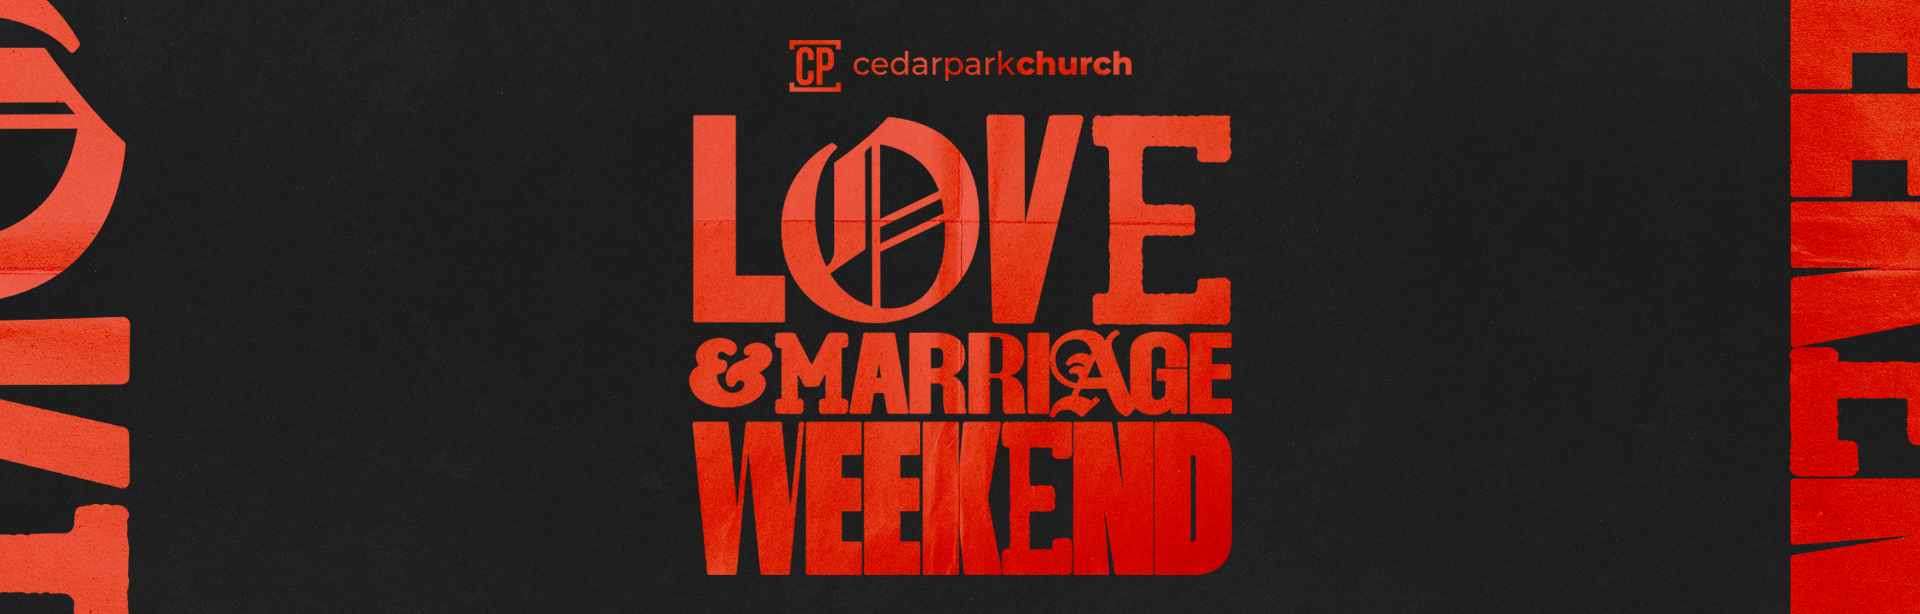 Love & Marriage Weekend